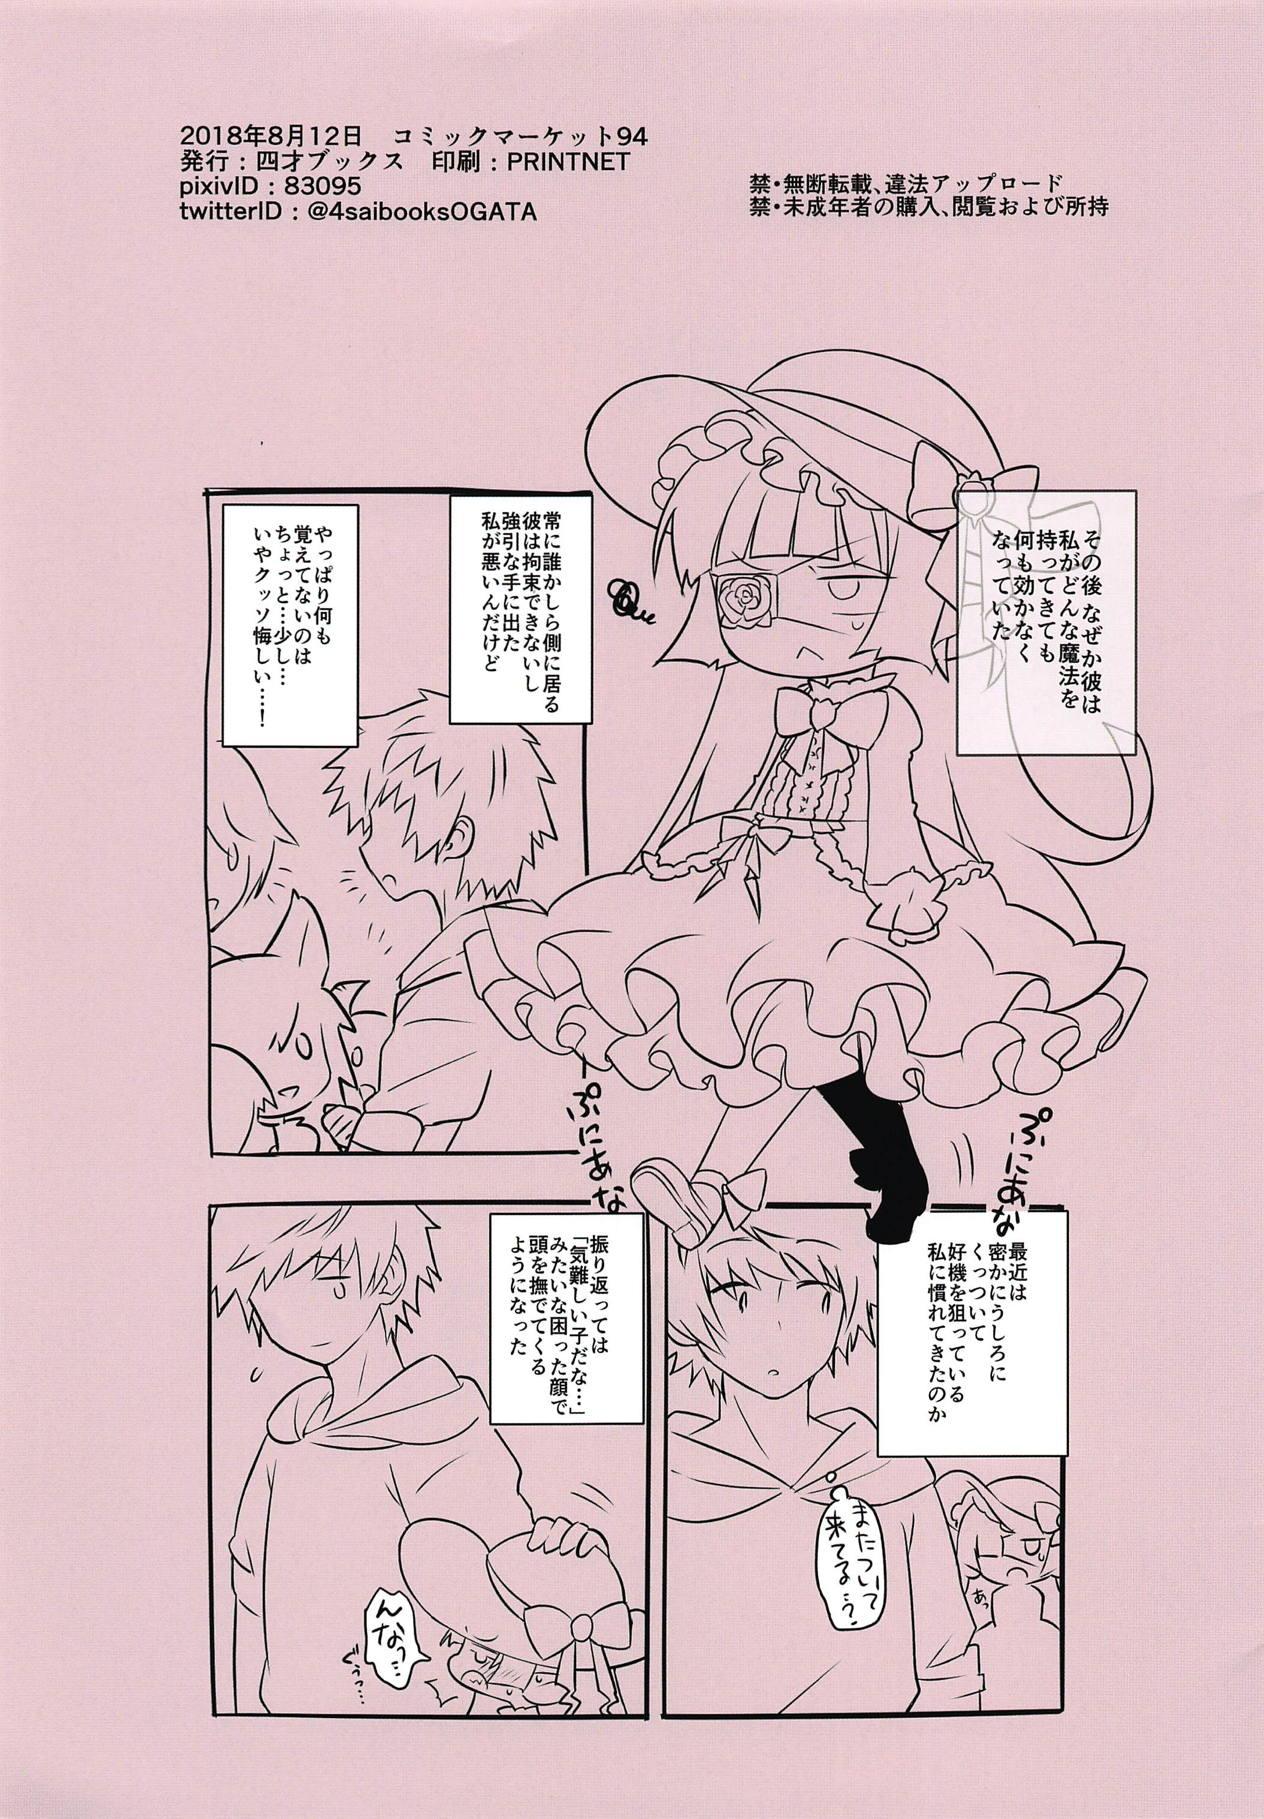 Orgame Zettai ni Shippai Suru! Lunalu Manual 2-satsume - Granblue fantasy Teensnow - Page 15